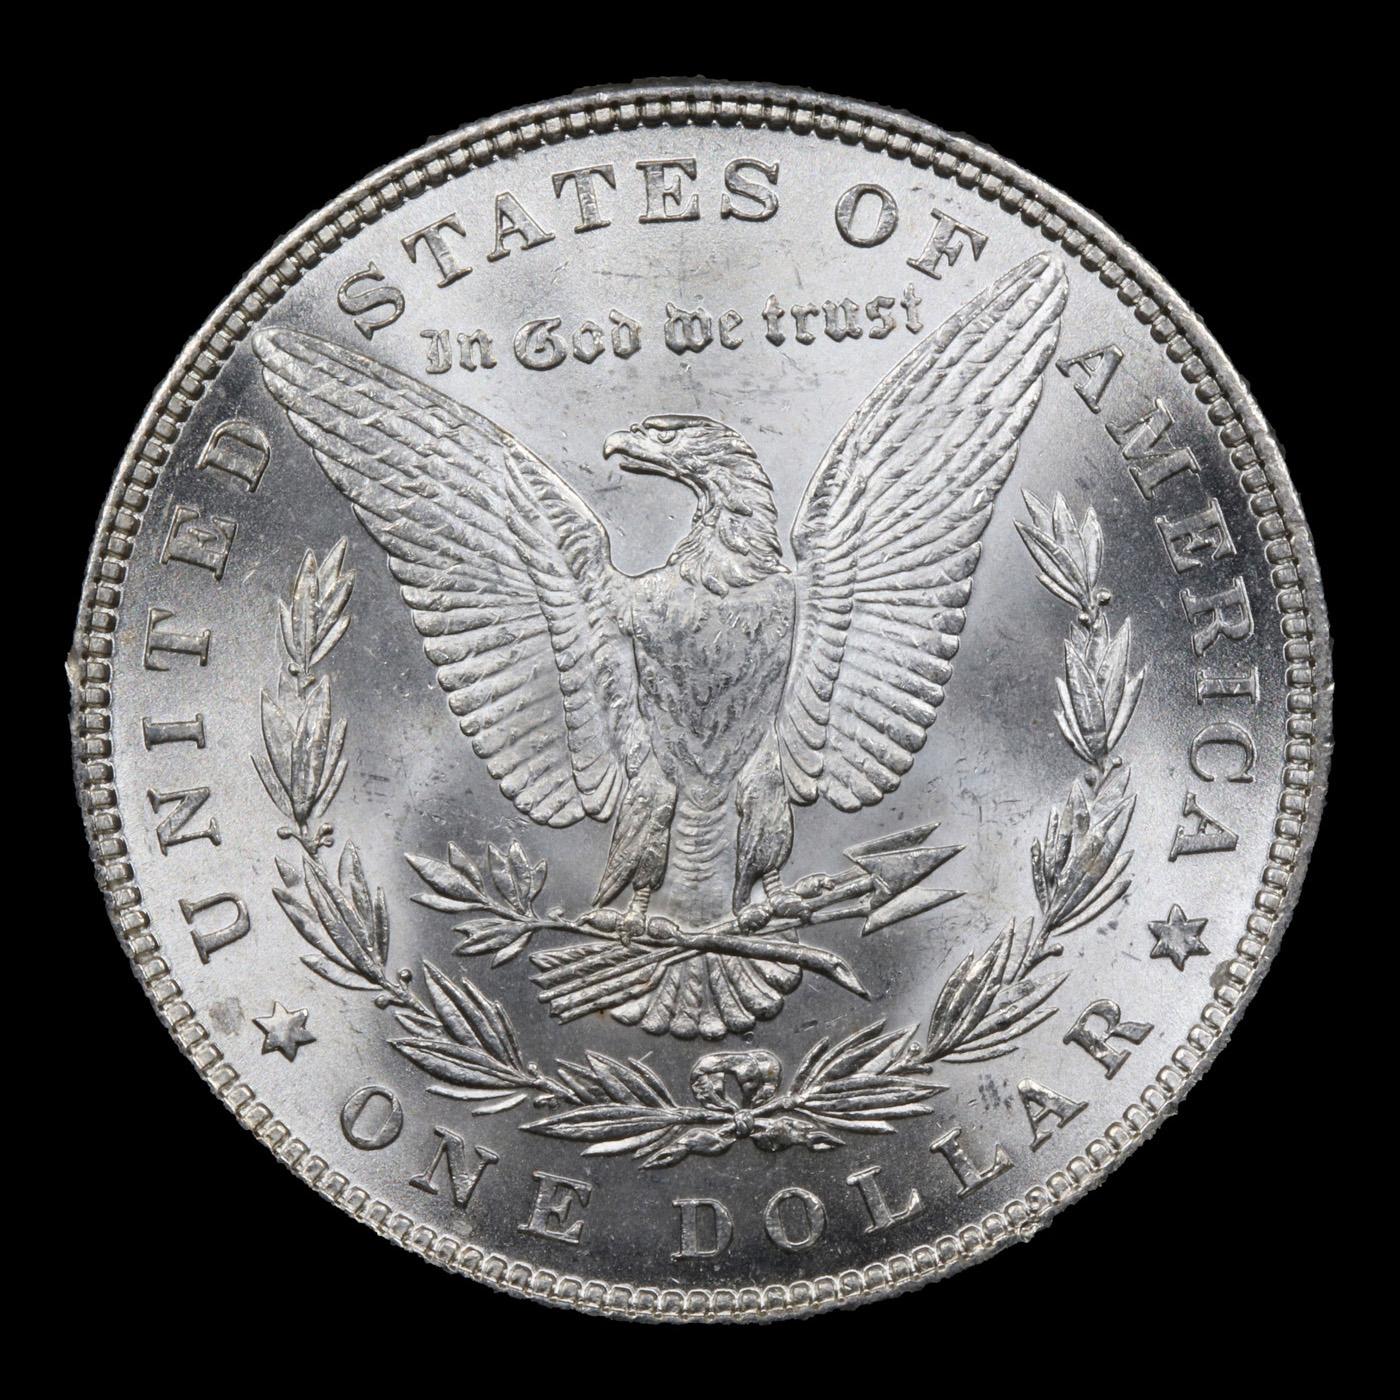 1882-p Morgan Dollar $1 Grades GEM Unc